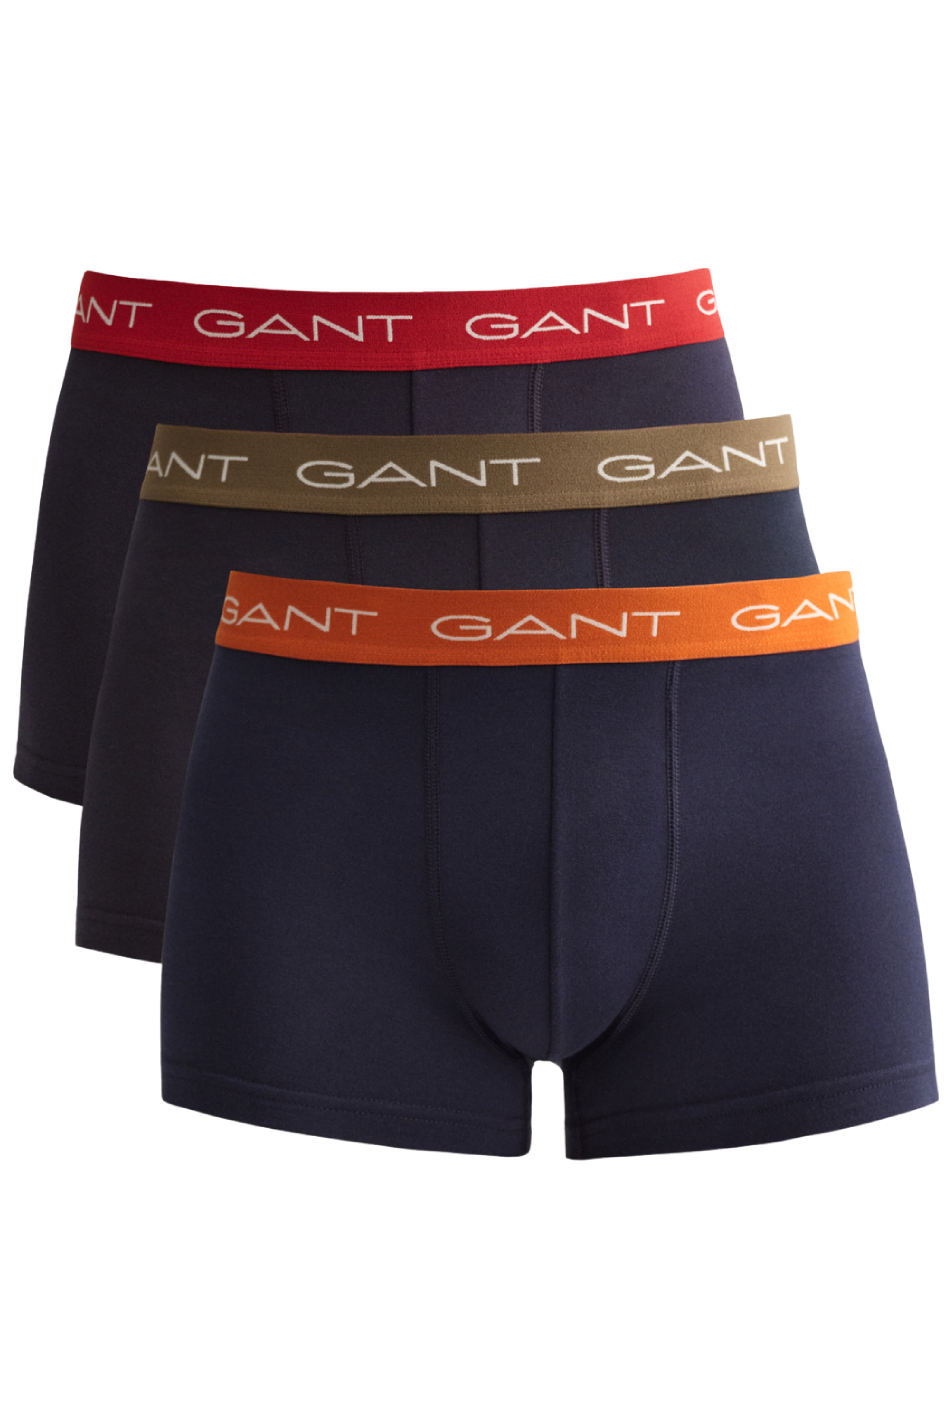 Gant 3 Pack Men's Trunk